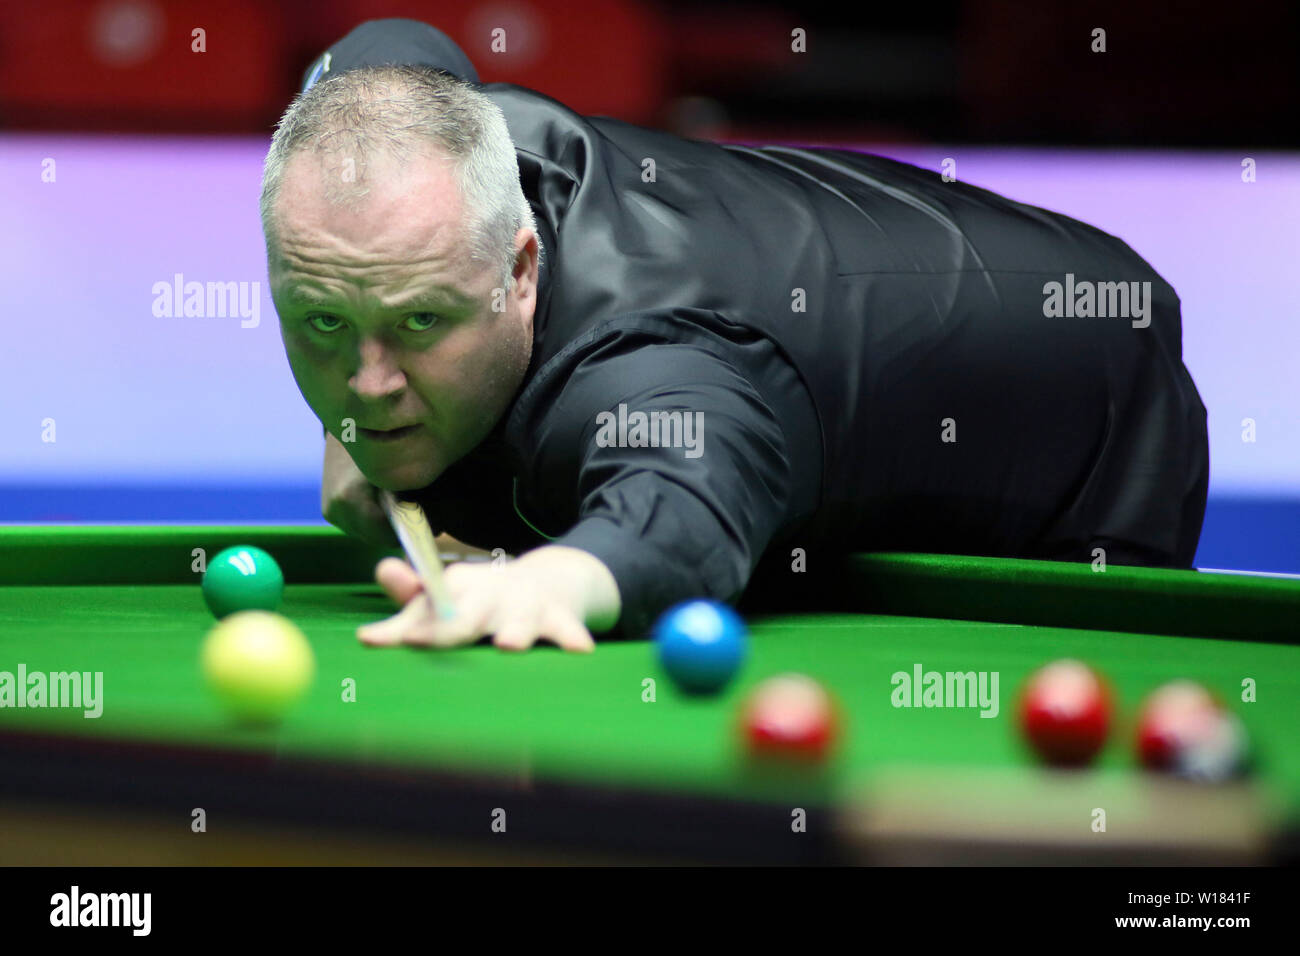 John Higgins von Schottland spielt einen Schuß zu Wales im viertelfinalegleichen während der Beverly 2019 Snooker Wm in Wuxi City, der ostchinesischen Provinz Jiangsu, 29. Juni 2019. Schottland Wales 4-3 besiegte. Stockfoto